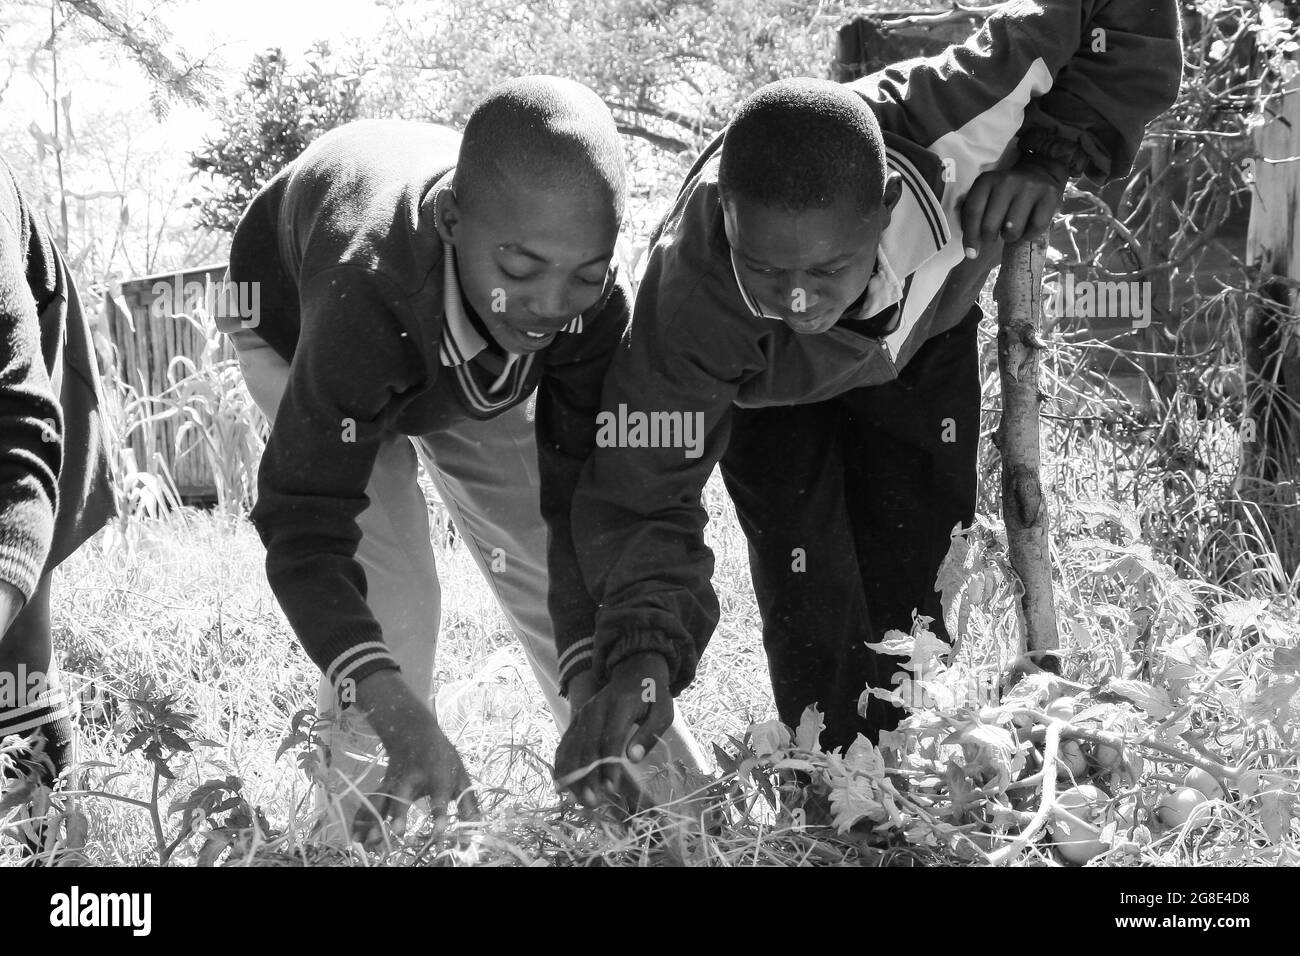 JOHANNESBURG, AFRIQUE DU SUD - 05 janvier 2021 : une photo en échelle de gris d'étudiants qui apprennent à connaître l'agriculture et l'agriculture à Johessburg, Afrique du Sud Banque D'Images